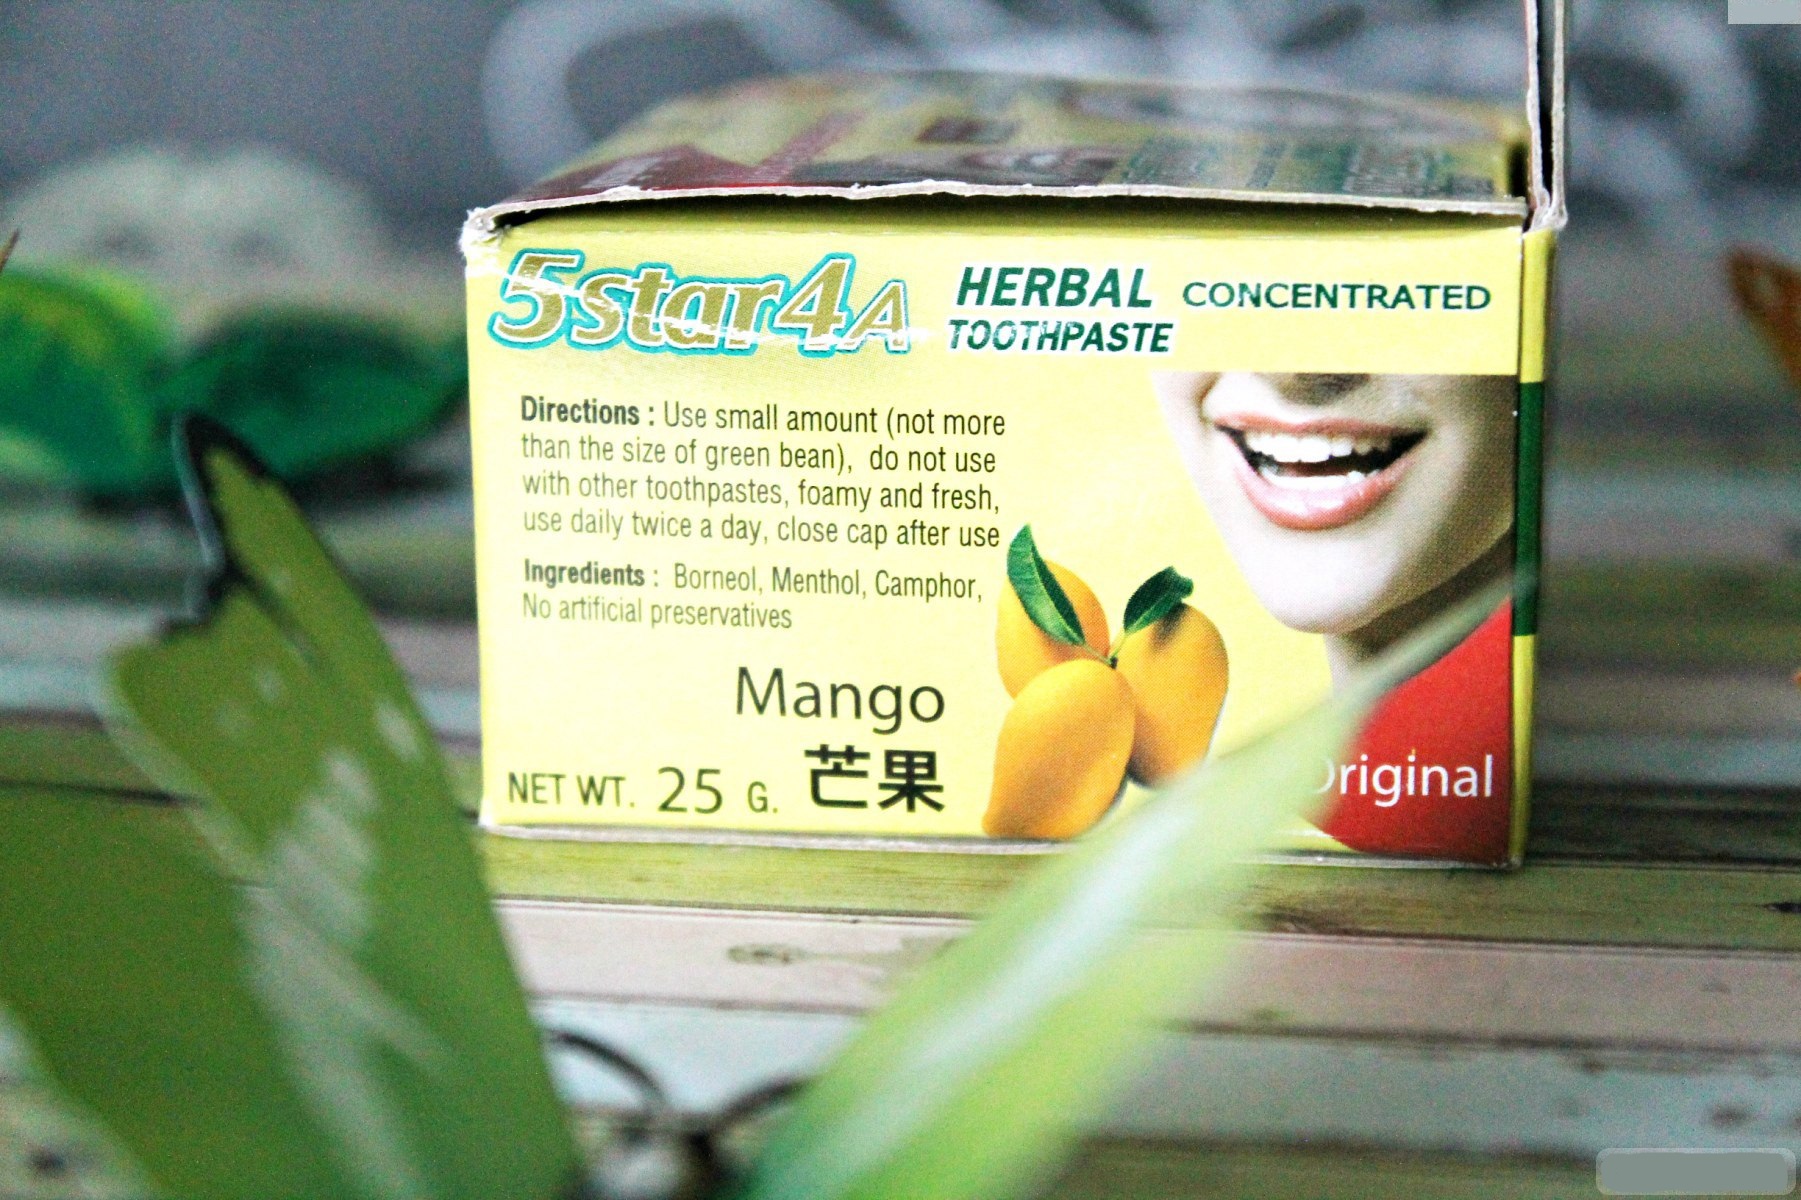 Тайская концентрированная зубная паста с манго от 5STAR 4A